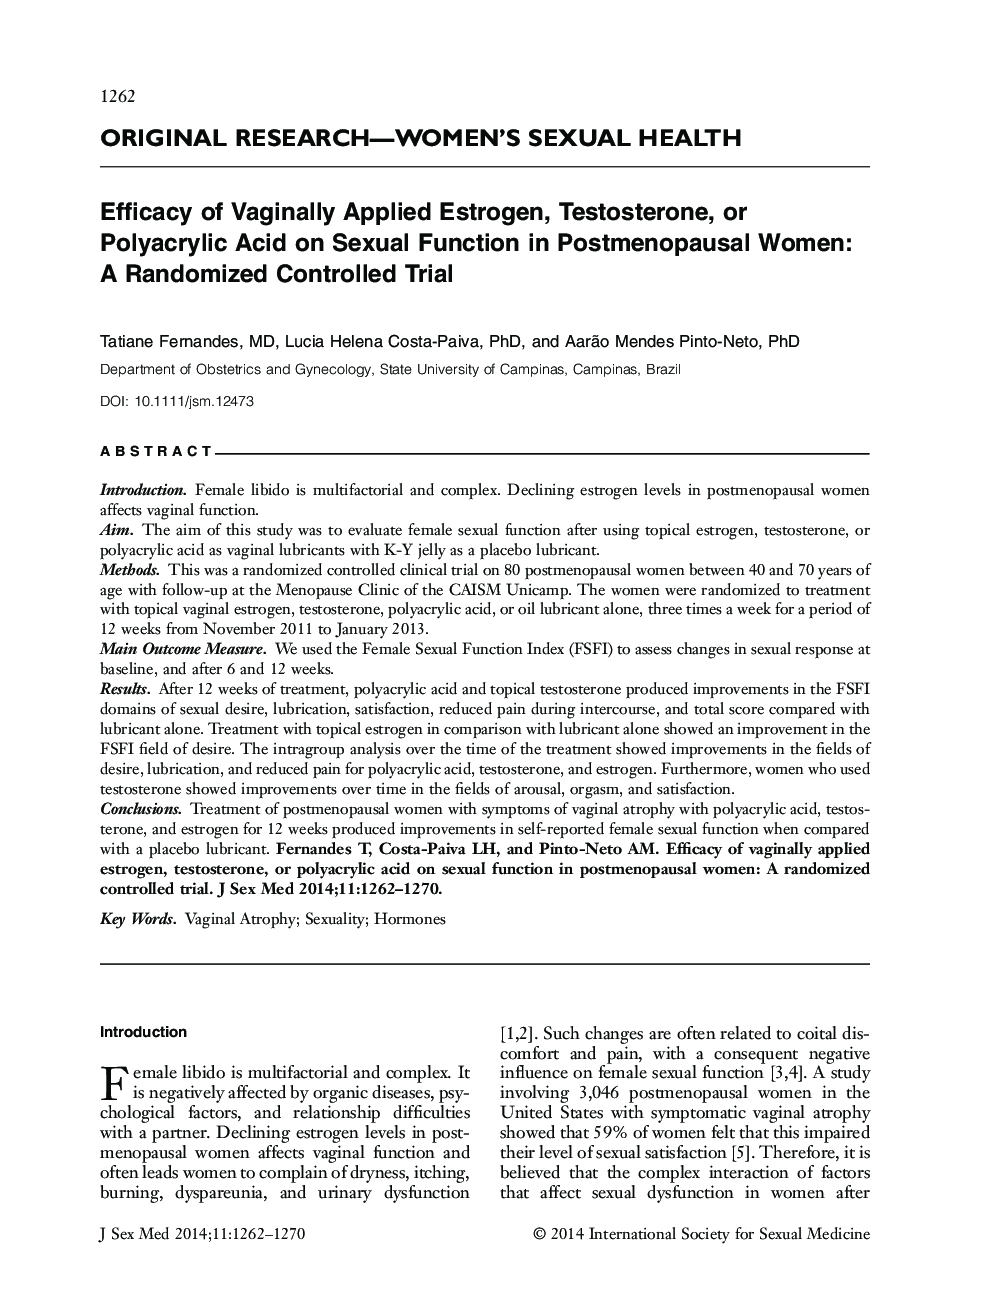 اثربخشی استروژن، تستوسترون، و یا پلی اکریلیک اسید واژینال بر عملکرد جنسی در زنان یائسه: یک آزمایش کنترل شده تصادفی 